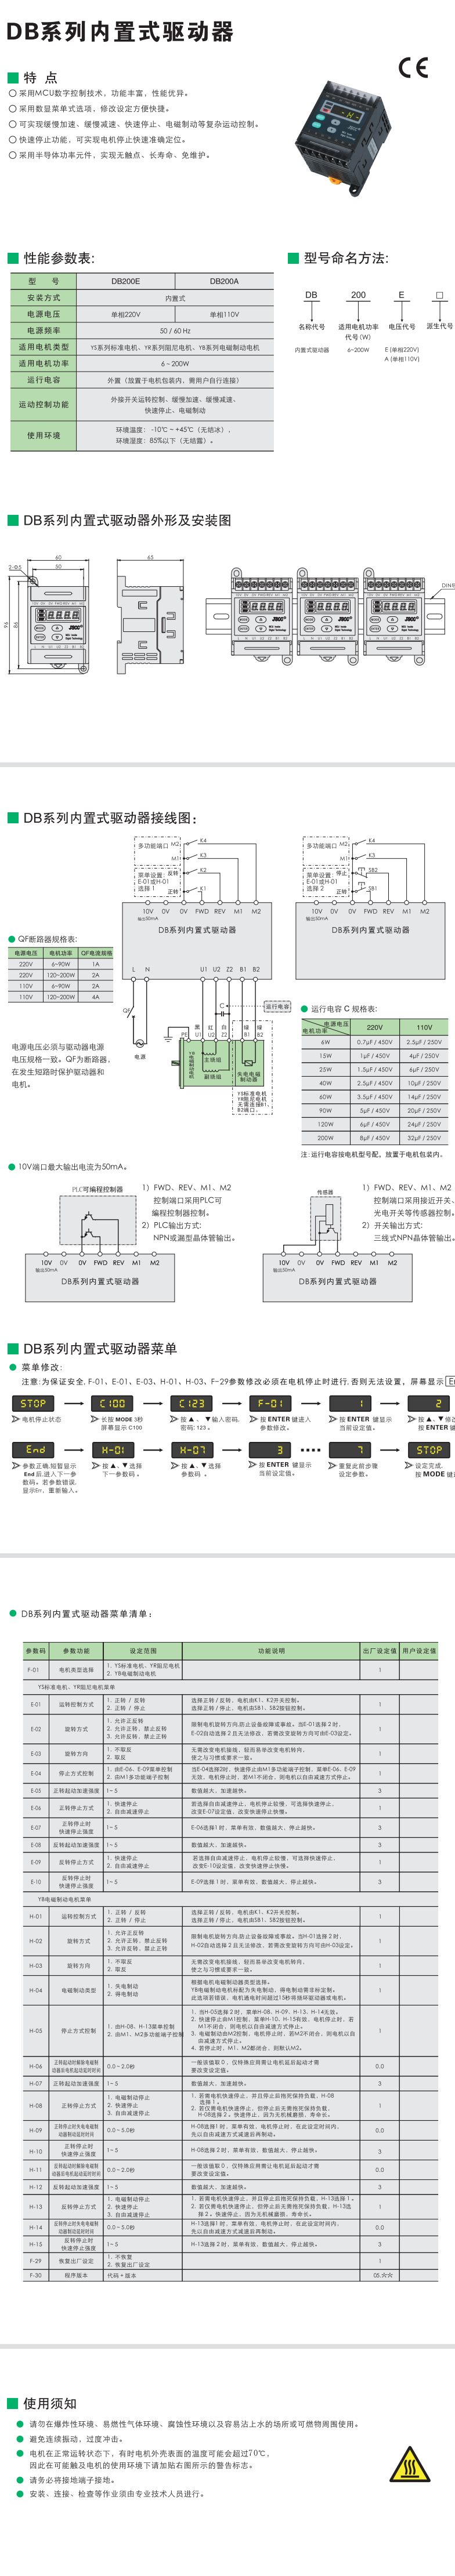 DB系列内置式调速器(图1)